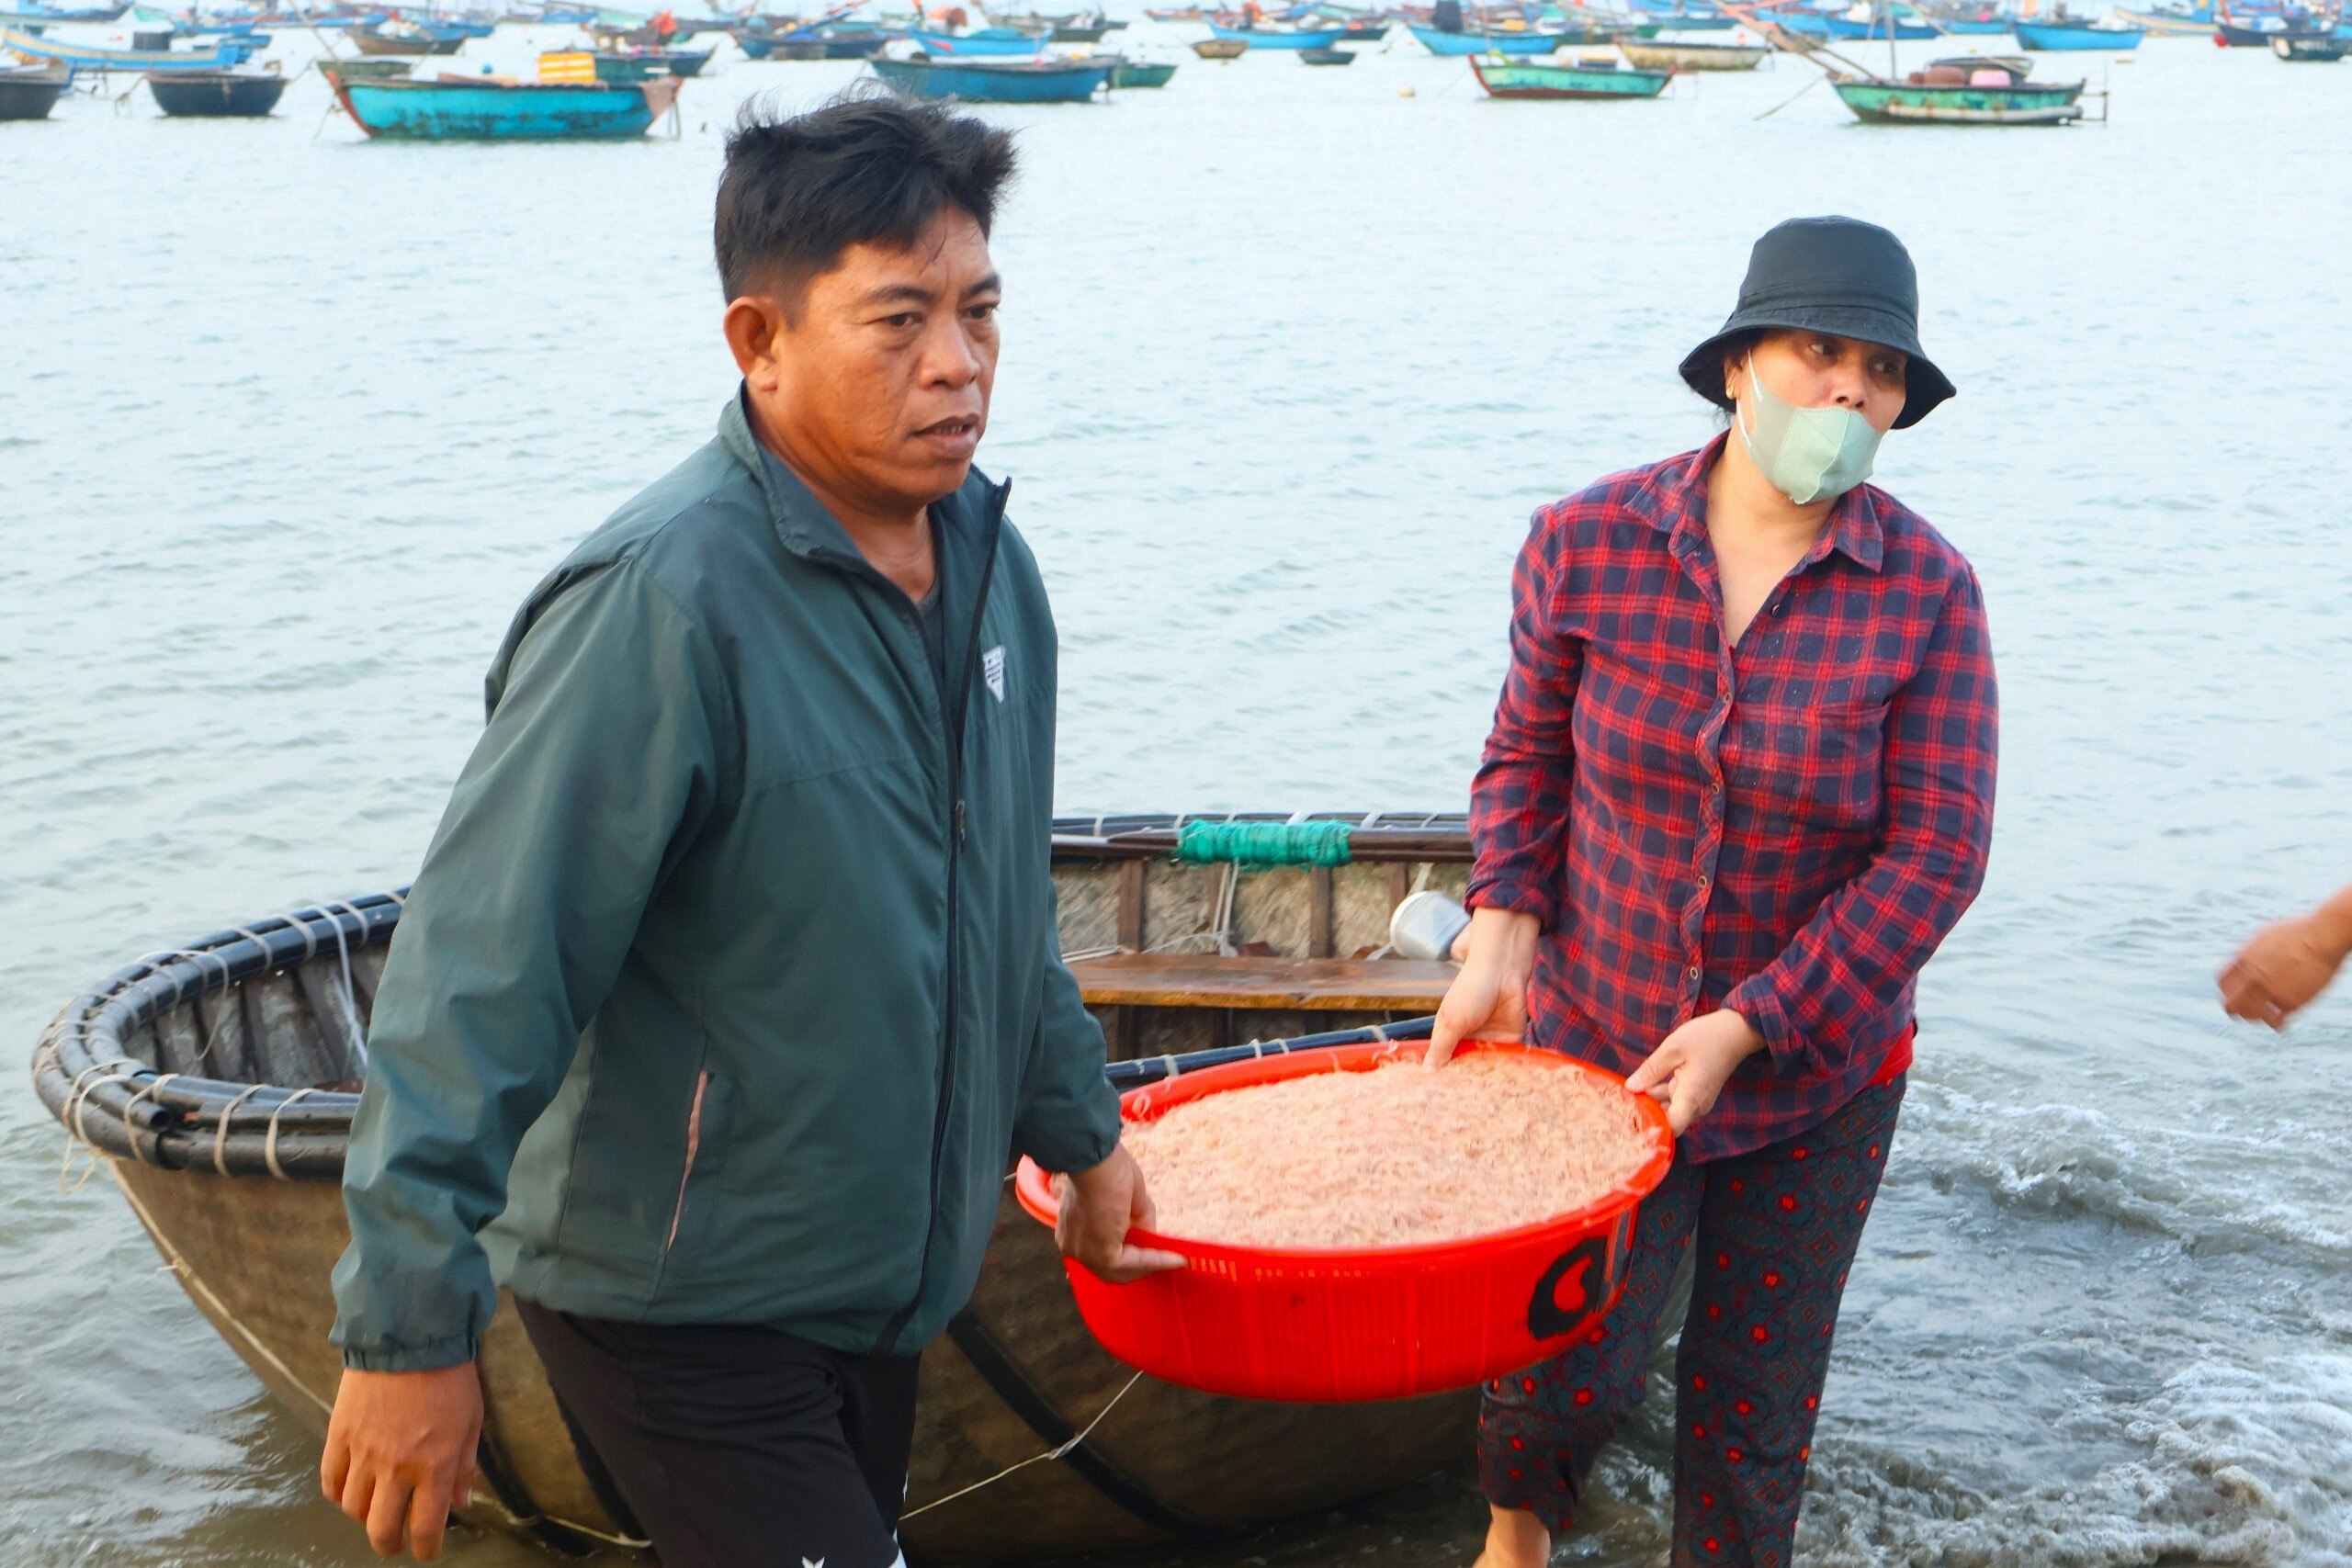 Khu chợ ven biển Đà Nẵng, chỉ bán độc nhất một loại hải sản- Ảnh 4.